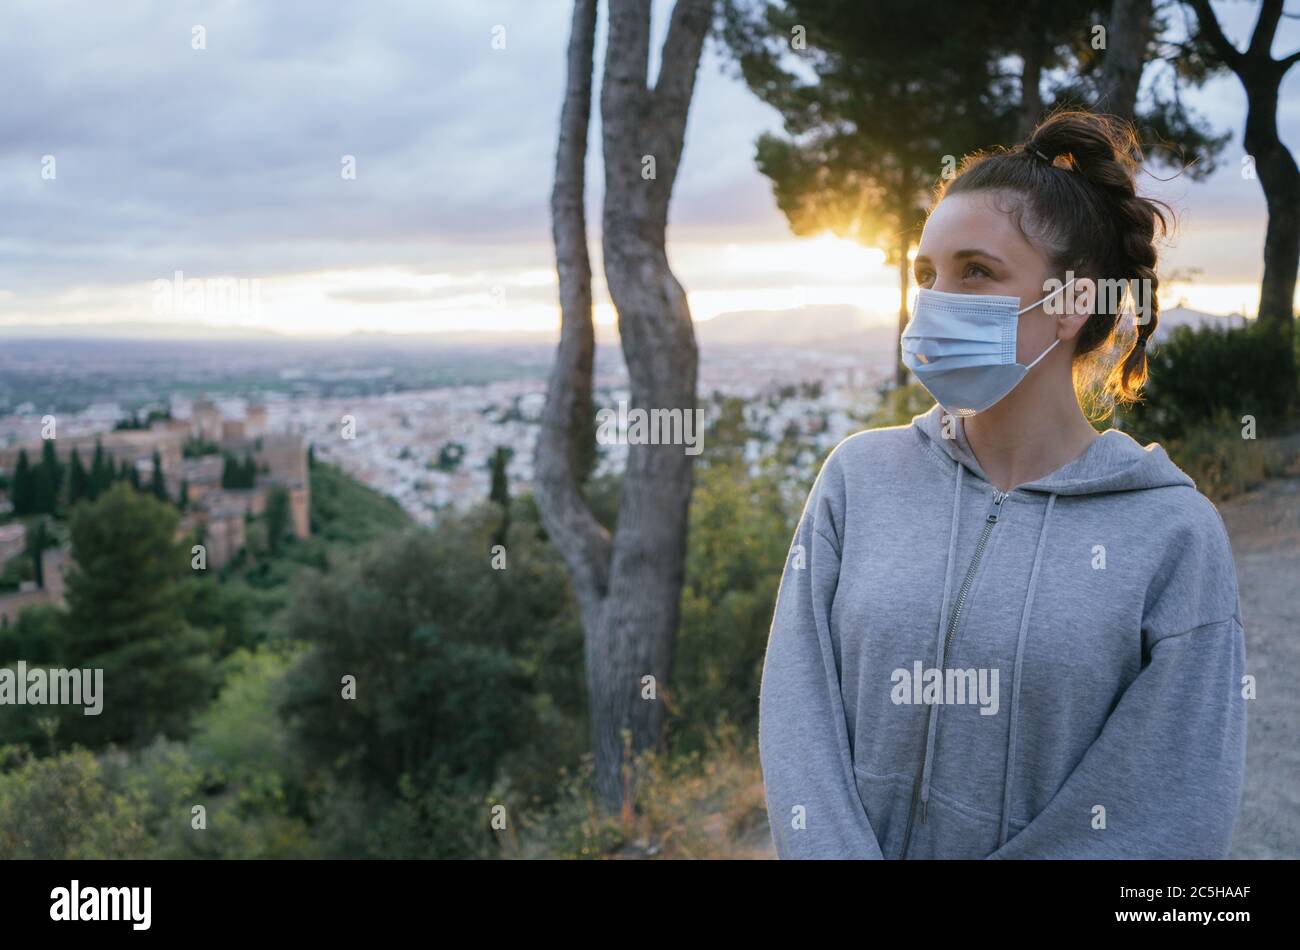 Giovane ragazza che guarda con una maschera dal covid, inquinamento con il sole in background, sopra la città dell'Alhambra, Spagna. Tramonto estivo. Foto Stock